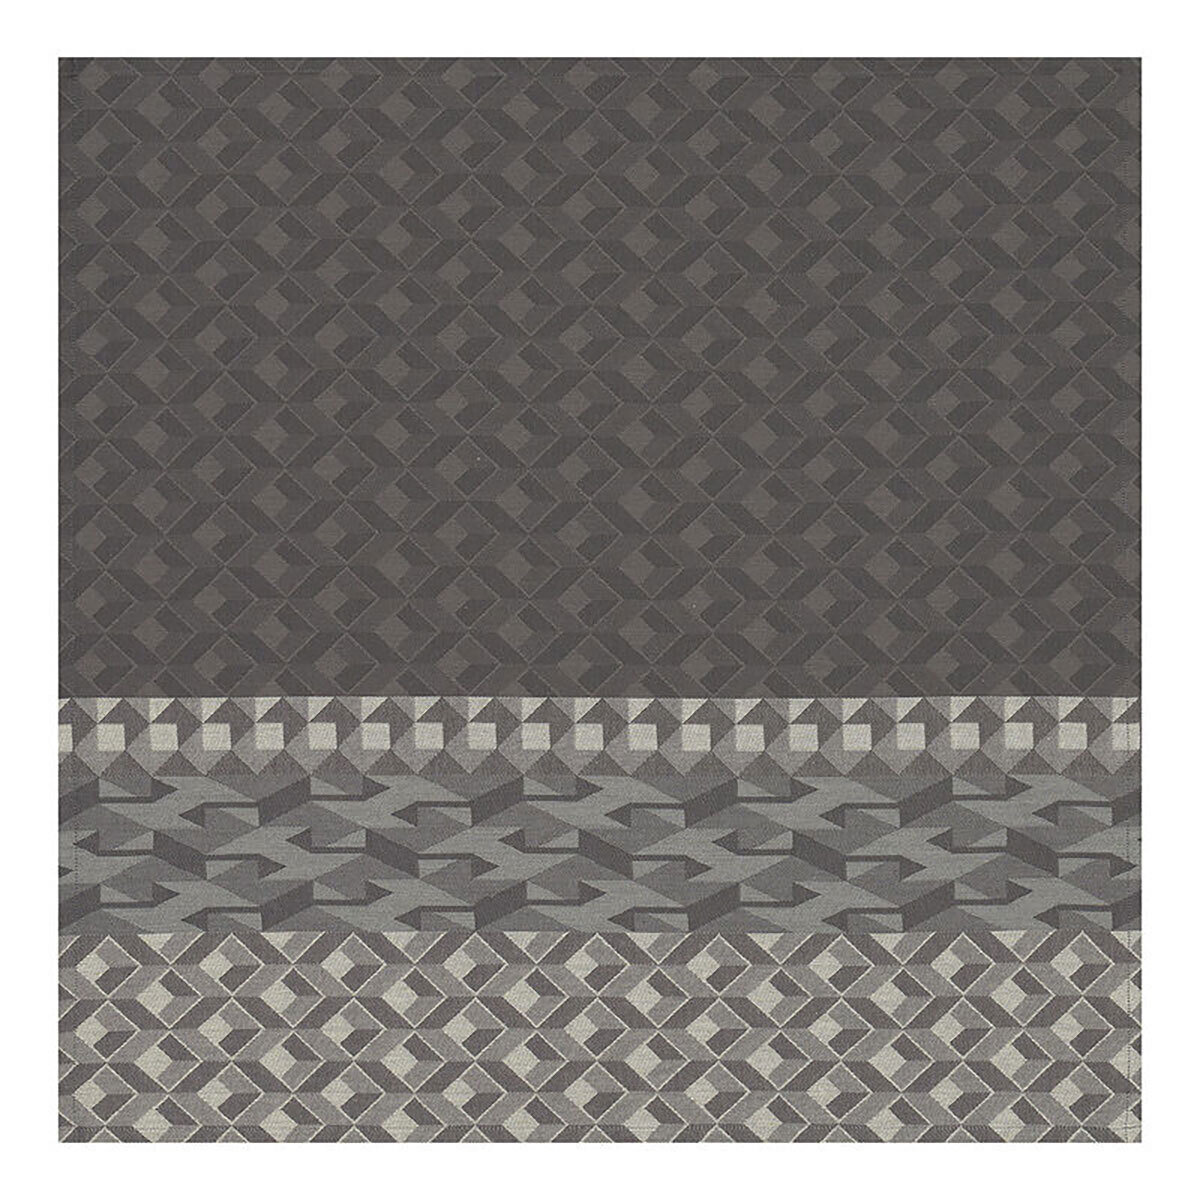 Le Jacquard Francais Napkin Caractere Grey 100% Cotton 23 x 23 Inch 28221 Set of 4